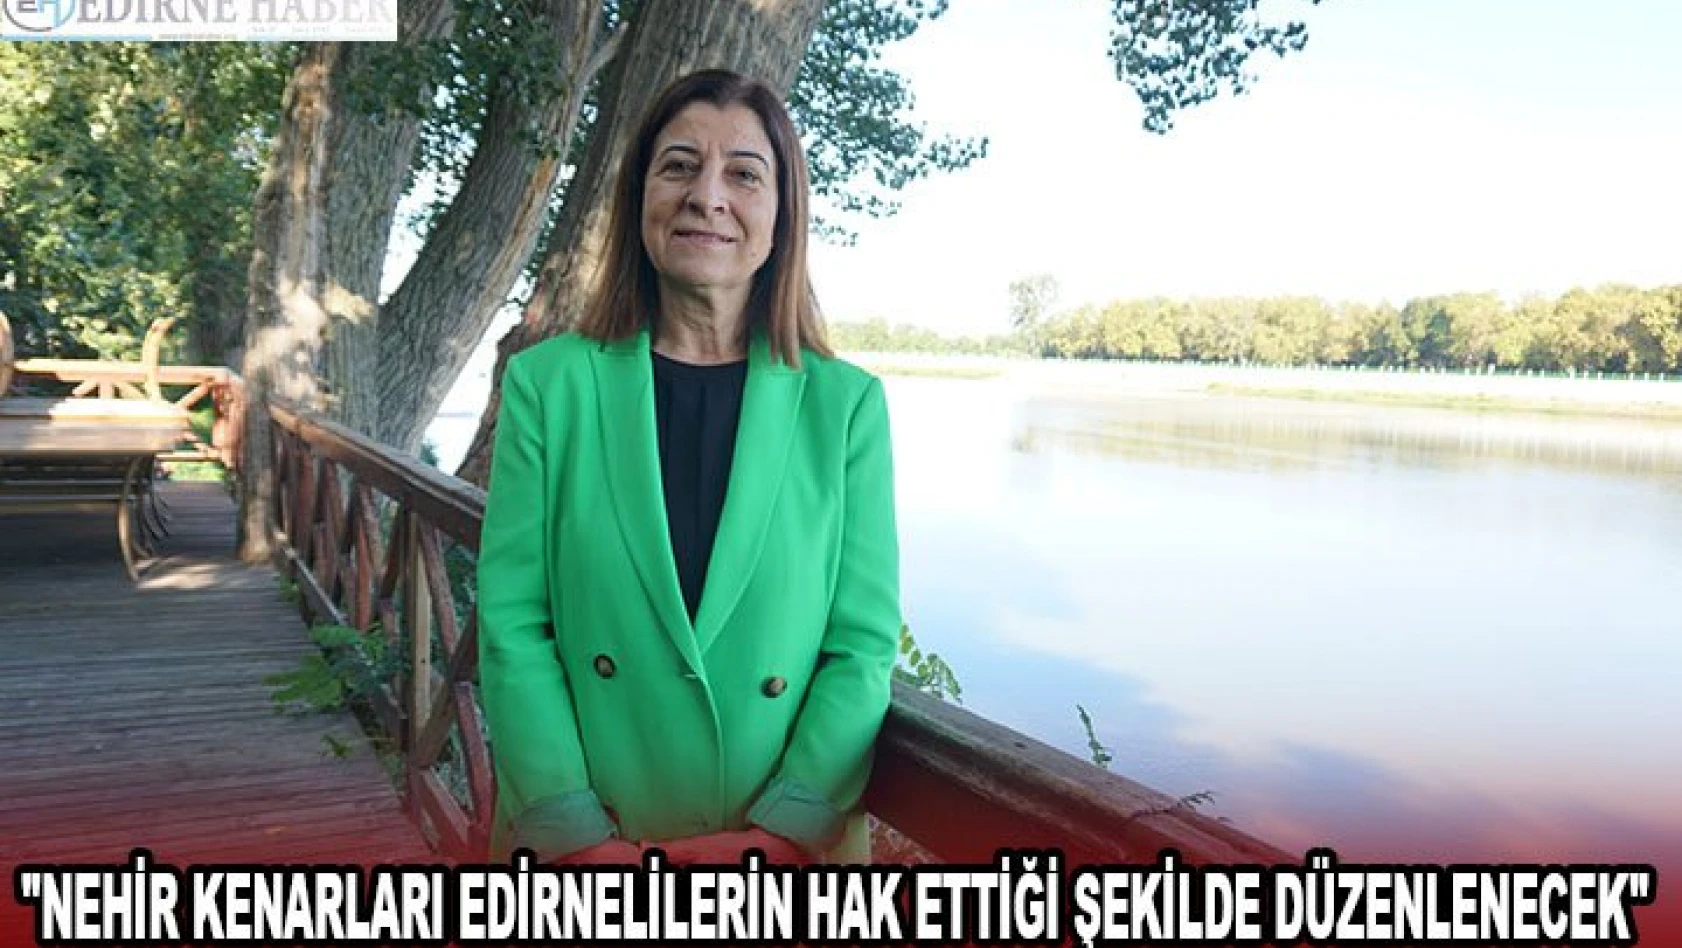 'Nehir kenarları Edirnelilerin hak ettiği şekilde düzenlenecek'